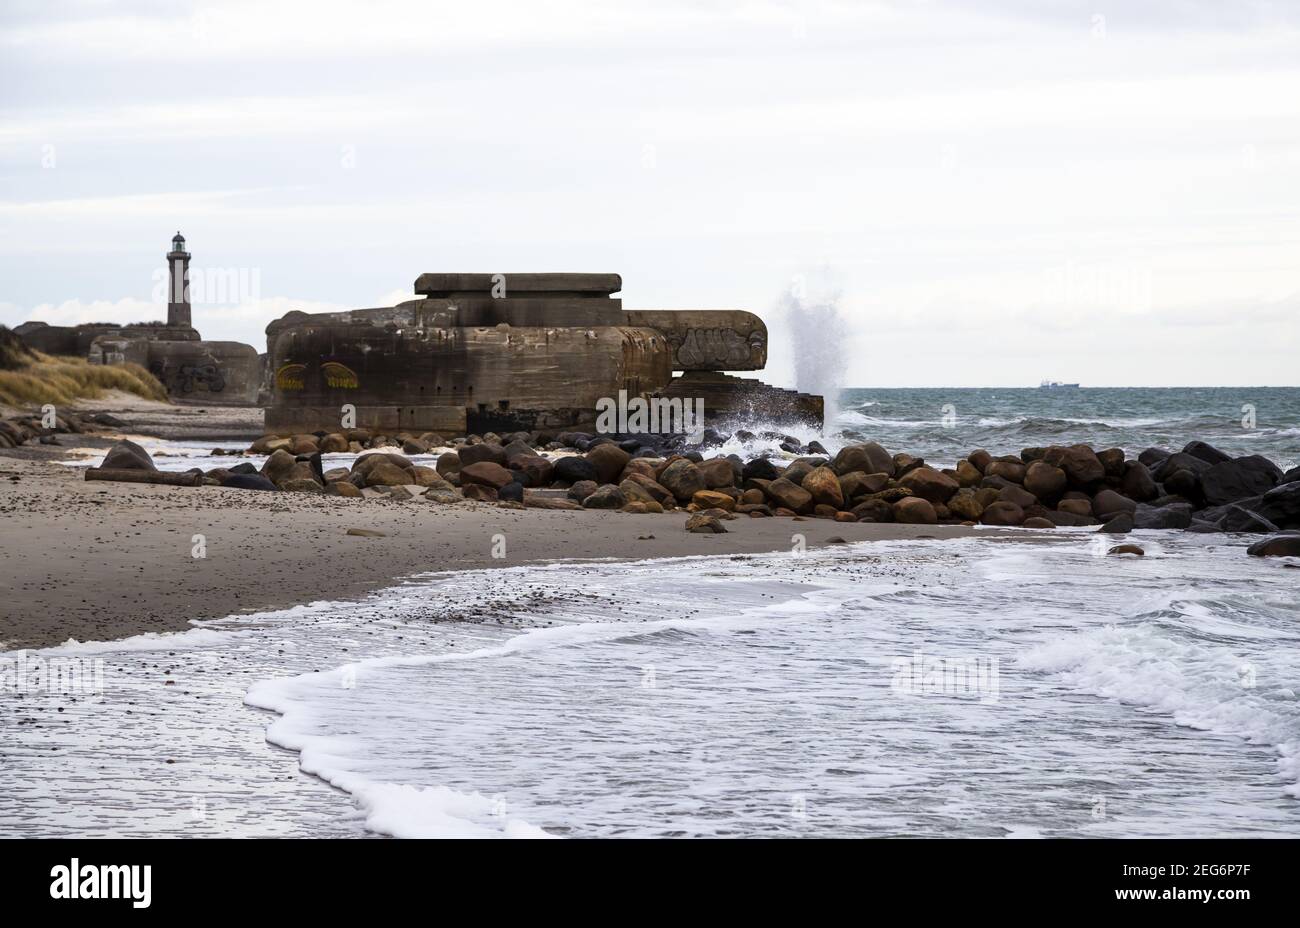 Bunker Cannon situé à la plage de Skagen, baie d'Aalbaek, l'entrée du Kattegat. Le bunker a été lavé par le sable, mais a été enterré dedans Banque D'Images